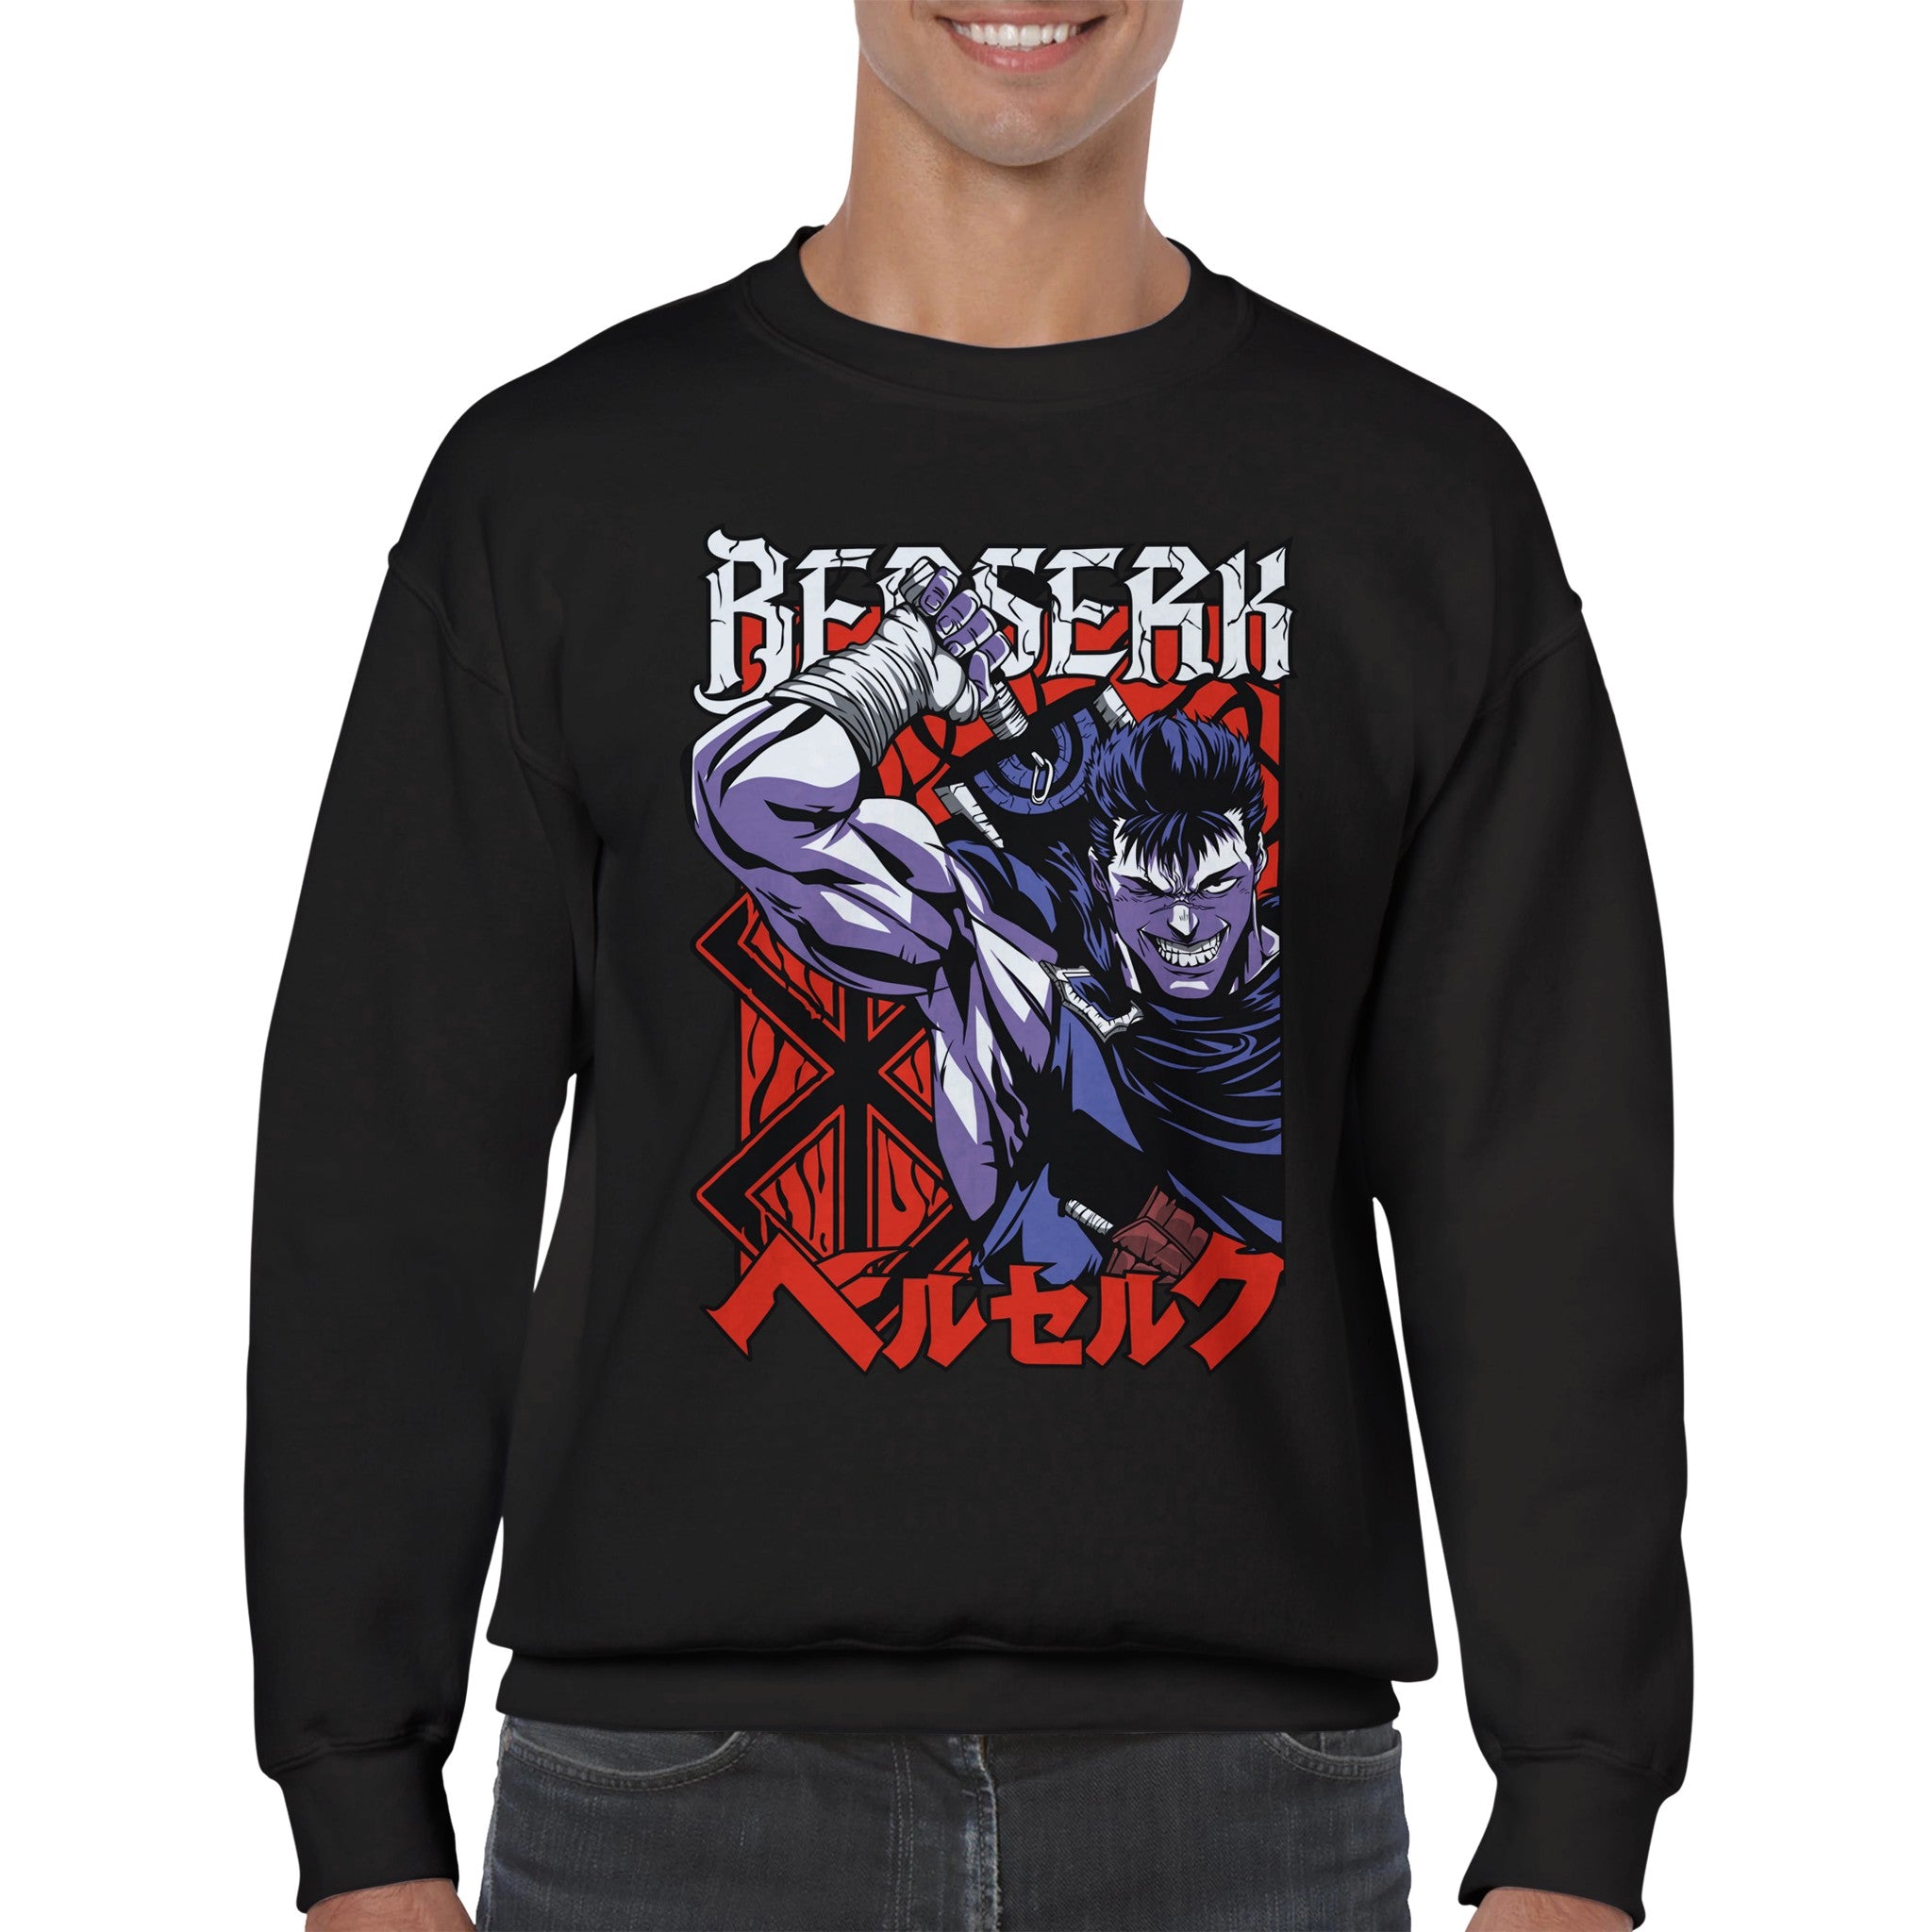 shop and buy berserk anime clothing guts sweatshirt/longsleeve/jumper